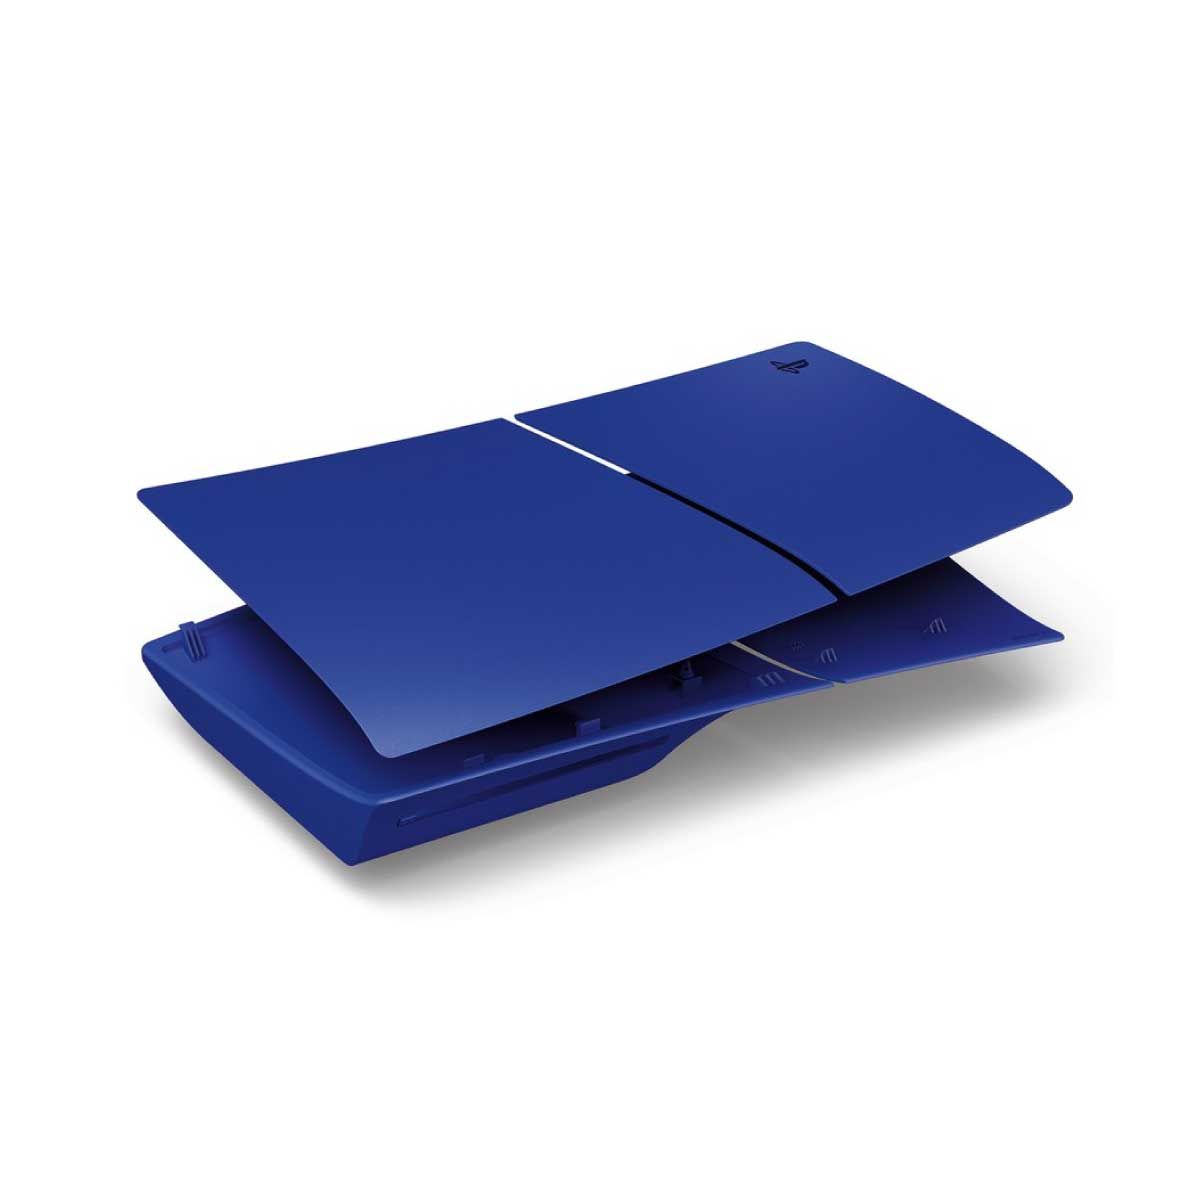 SONY Console Cover Volcanic Blue รุ่น CFI-ZCS2G09 ฝาครอบเครื่องเล่นเกมส์ สี Blue